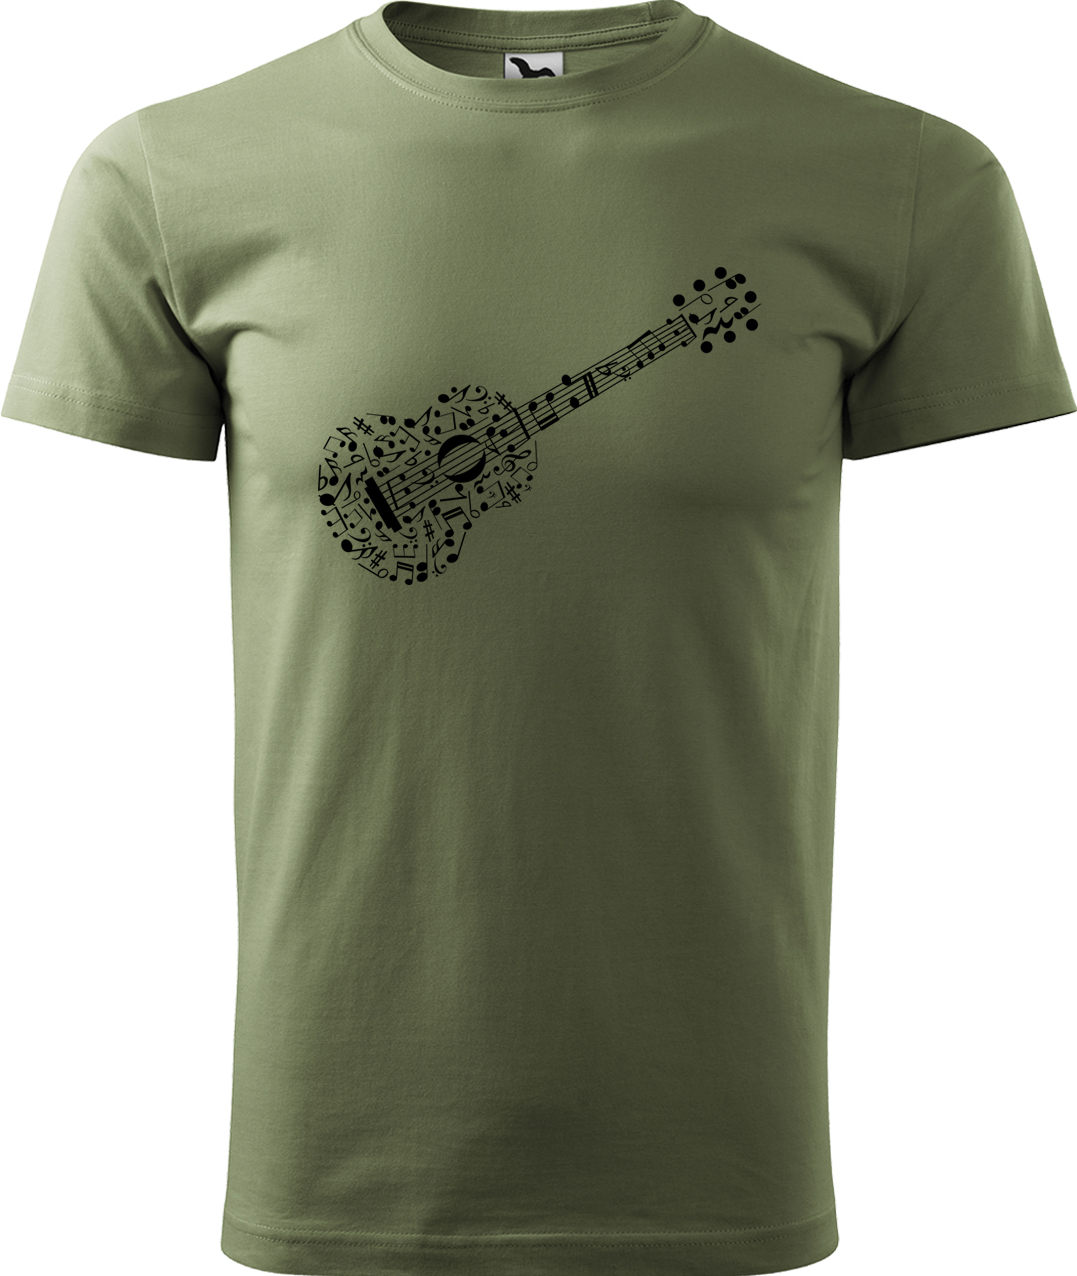 Pánské tričko s kytarou - Kytara z not Velikost: S, Barva: Světlá khaki (28), Střih: pánský